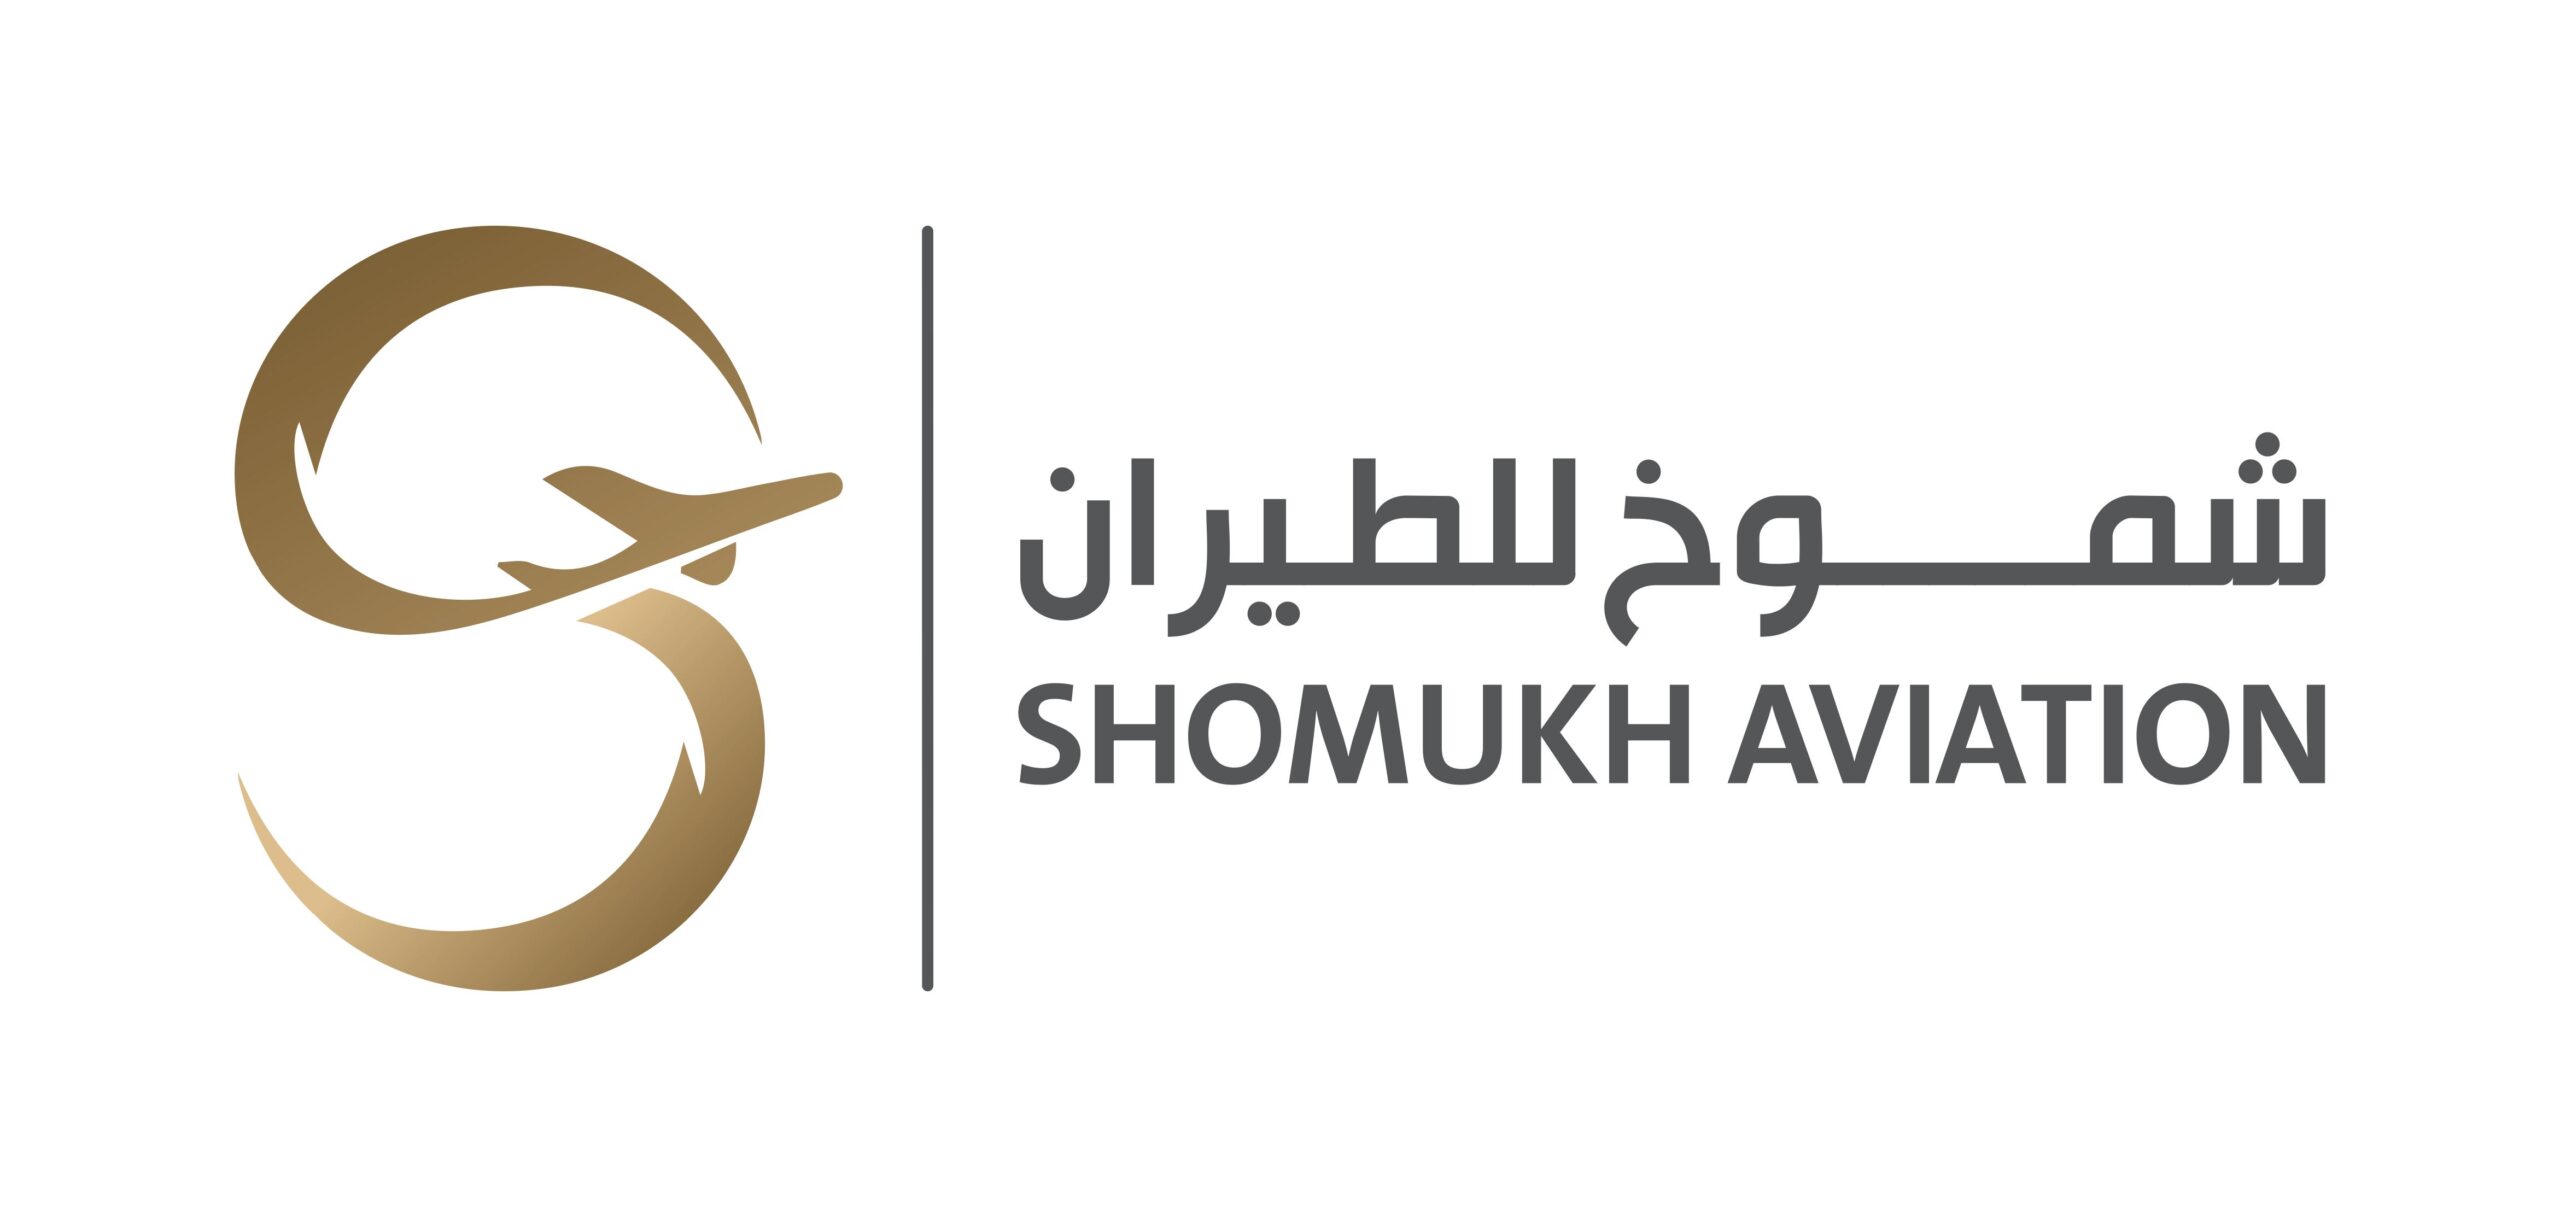 Shomukh Aviation